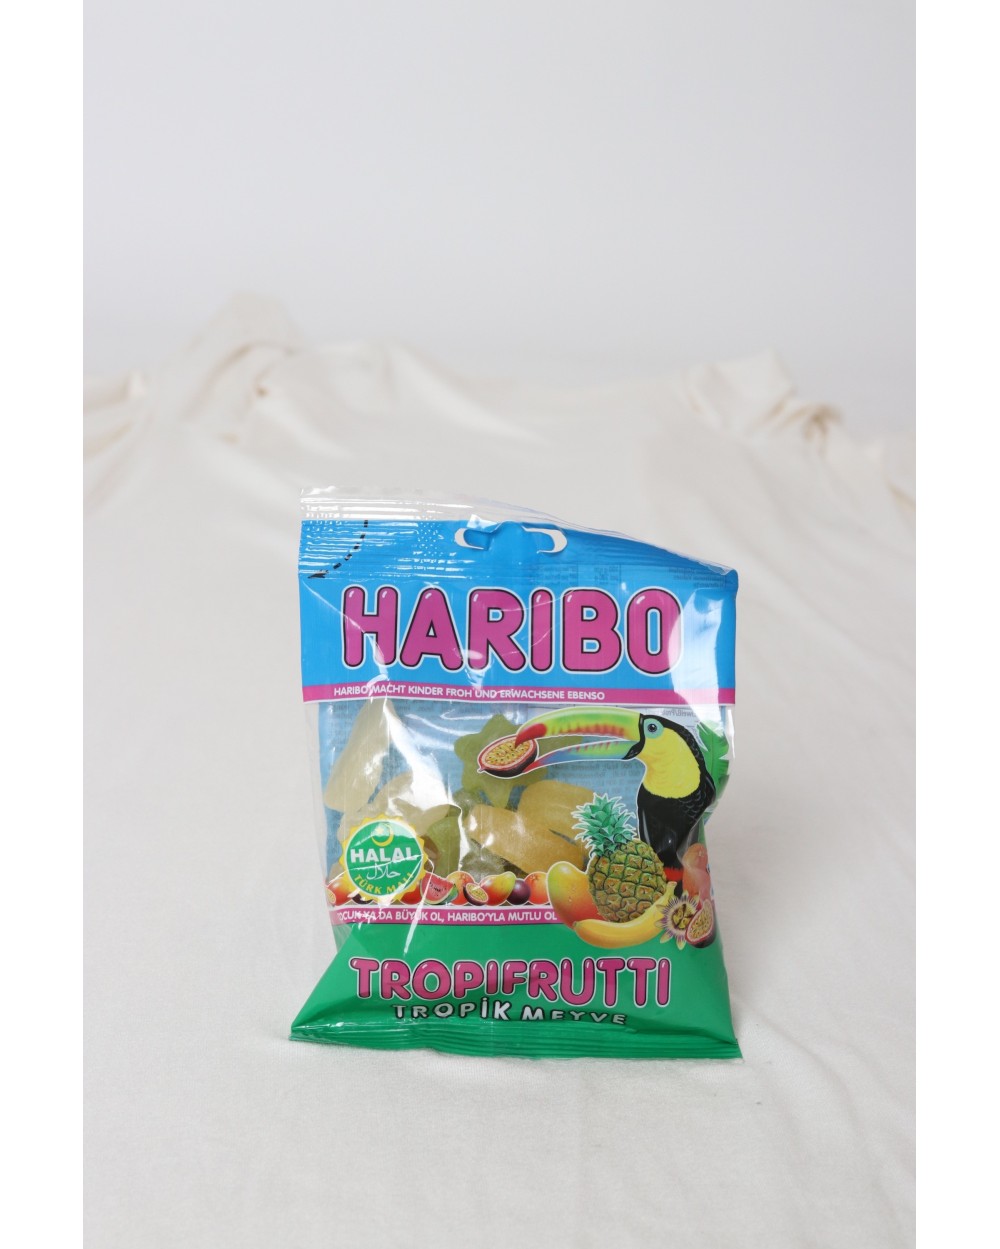 Haribo Tropifruitti Halal Candy